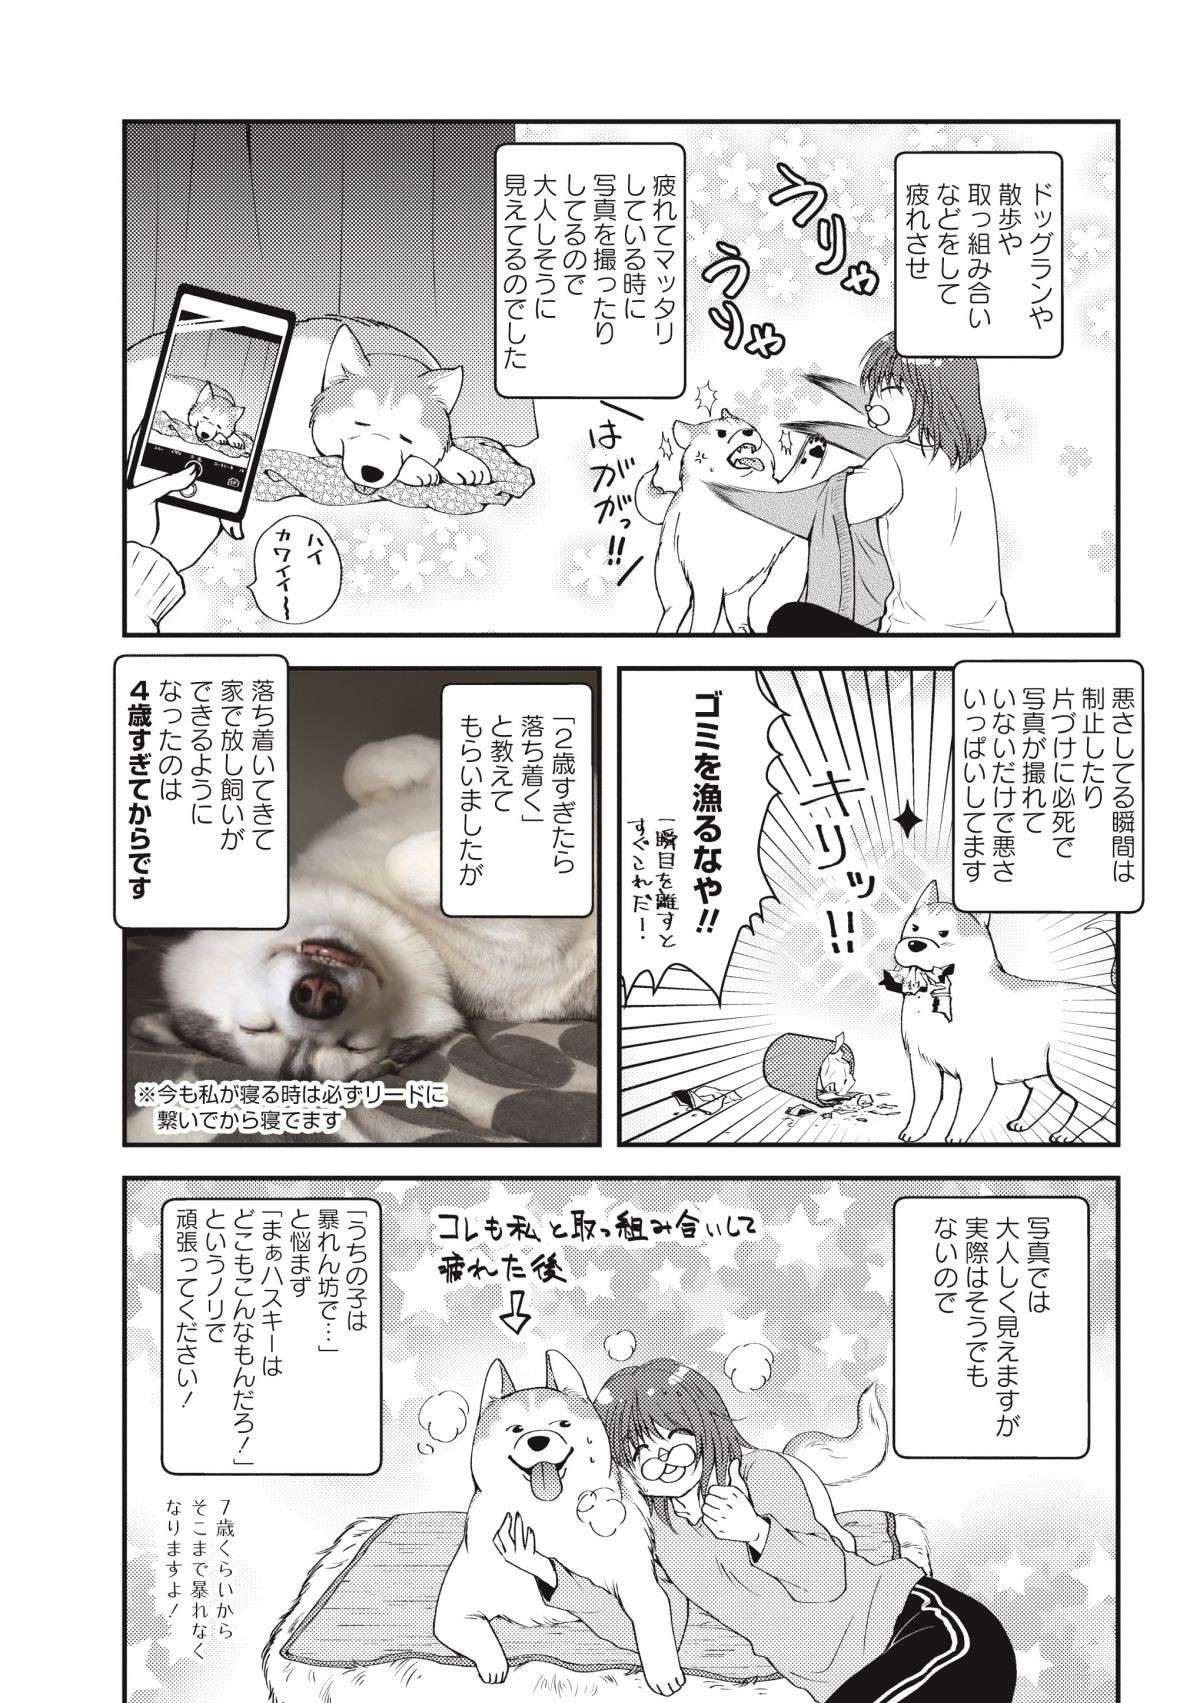 「痛いけど幸せ」犬も猫も甘えん坊になるとかわいいけど...／猫とハスキーとハマジ1 neko_husky_hamaji6-2.jpg